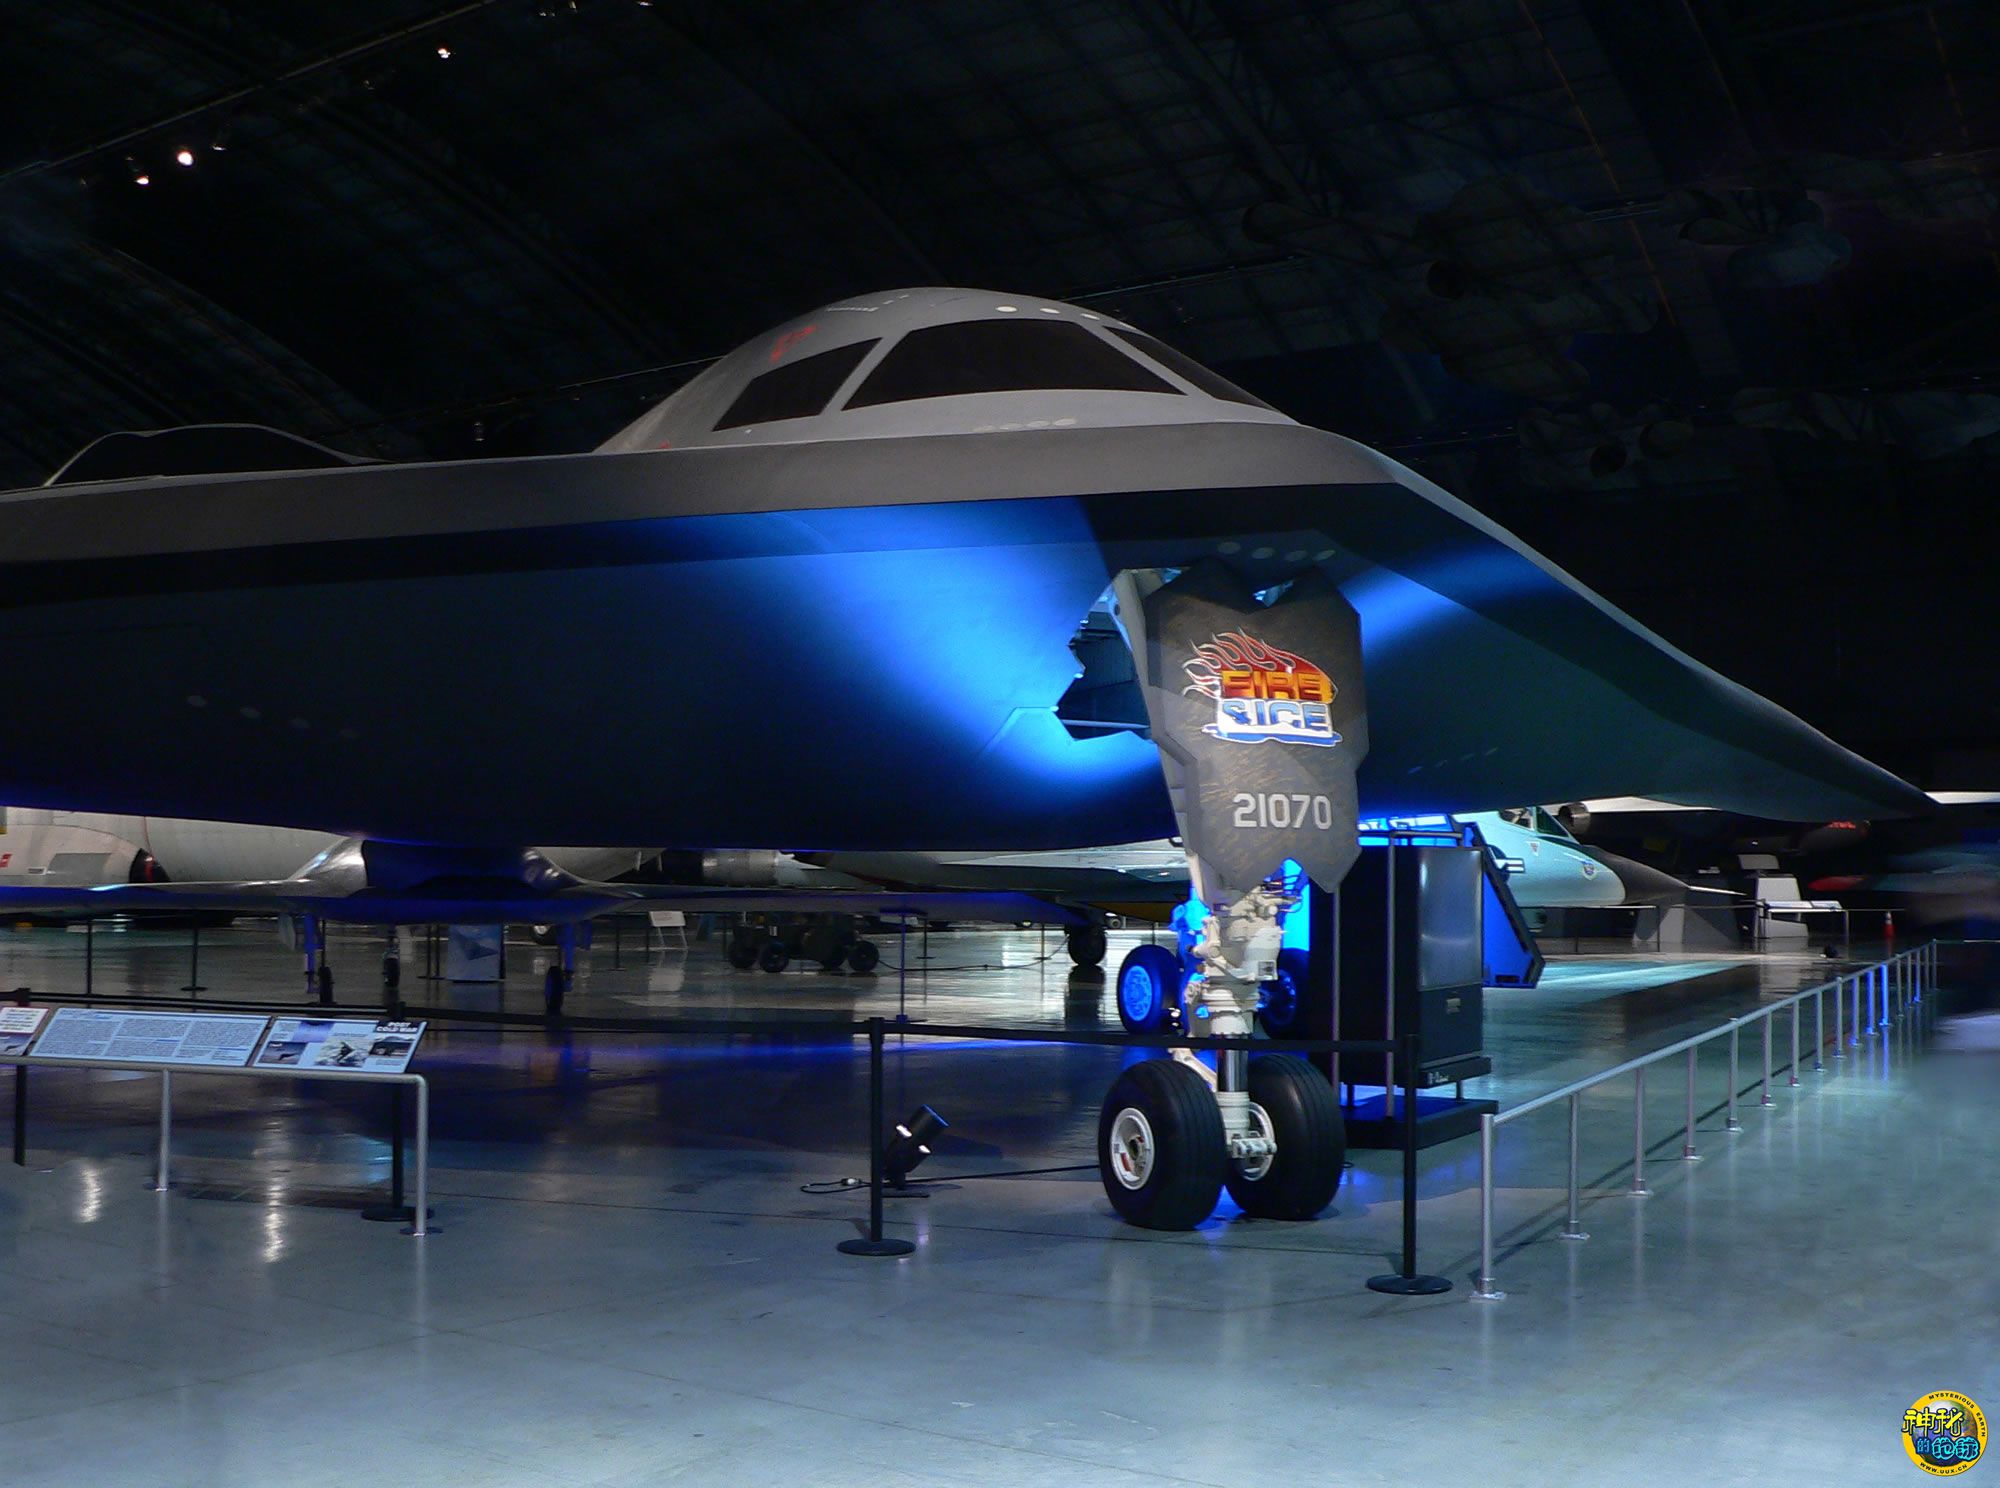 
美媒:全球唯一隐形战略轰炸机B-2隐形轰炸机首飞30周年